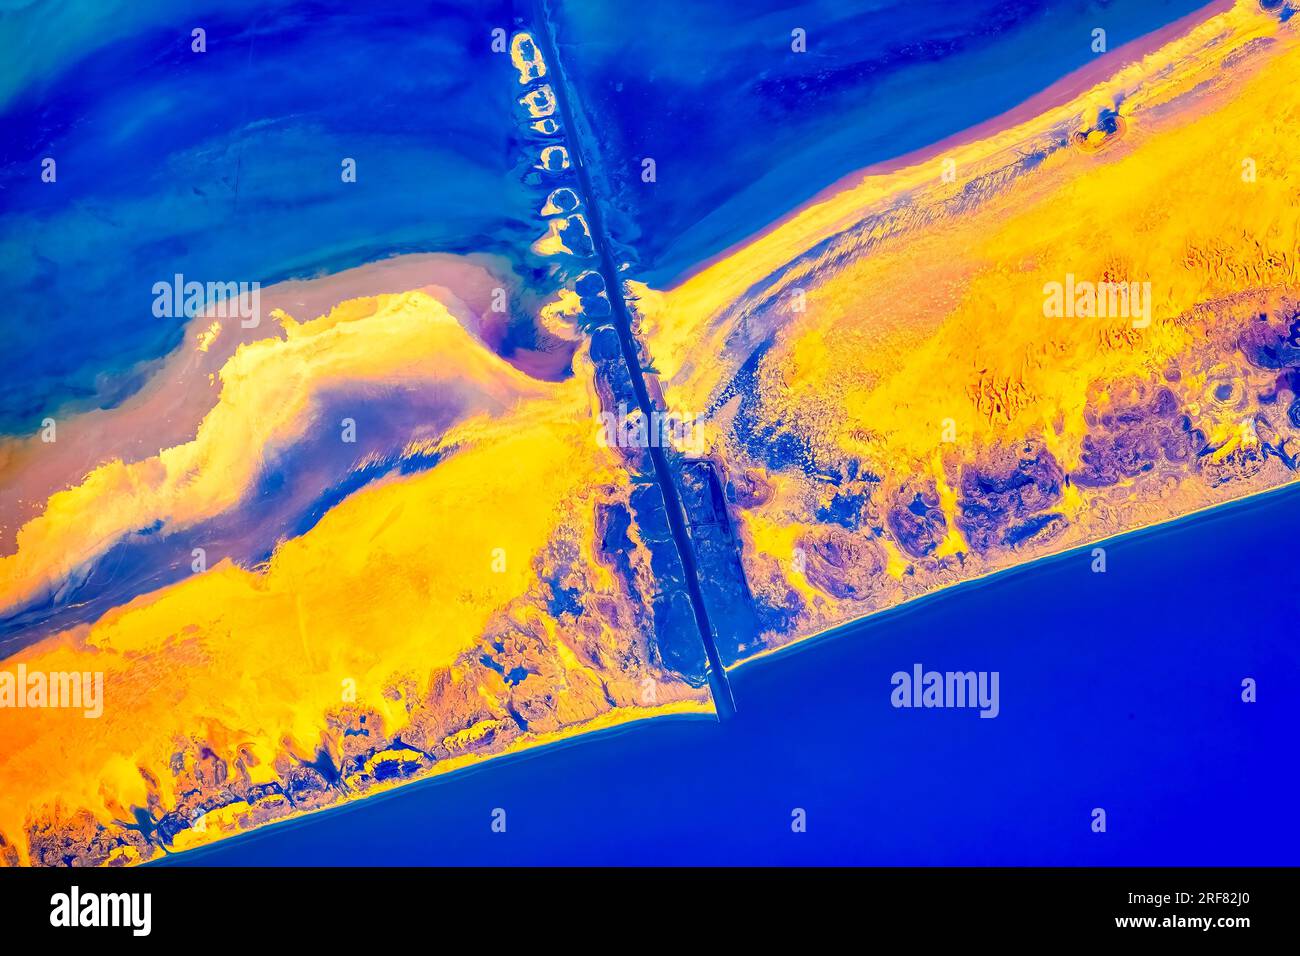 Mansfiel Channel auf Padre Island südliche texanische Küste, USA. Digitale Verstärkung eines von der NASA bereitgestellten Bildes Stockfoto